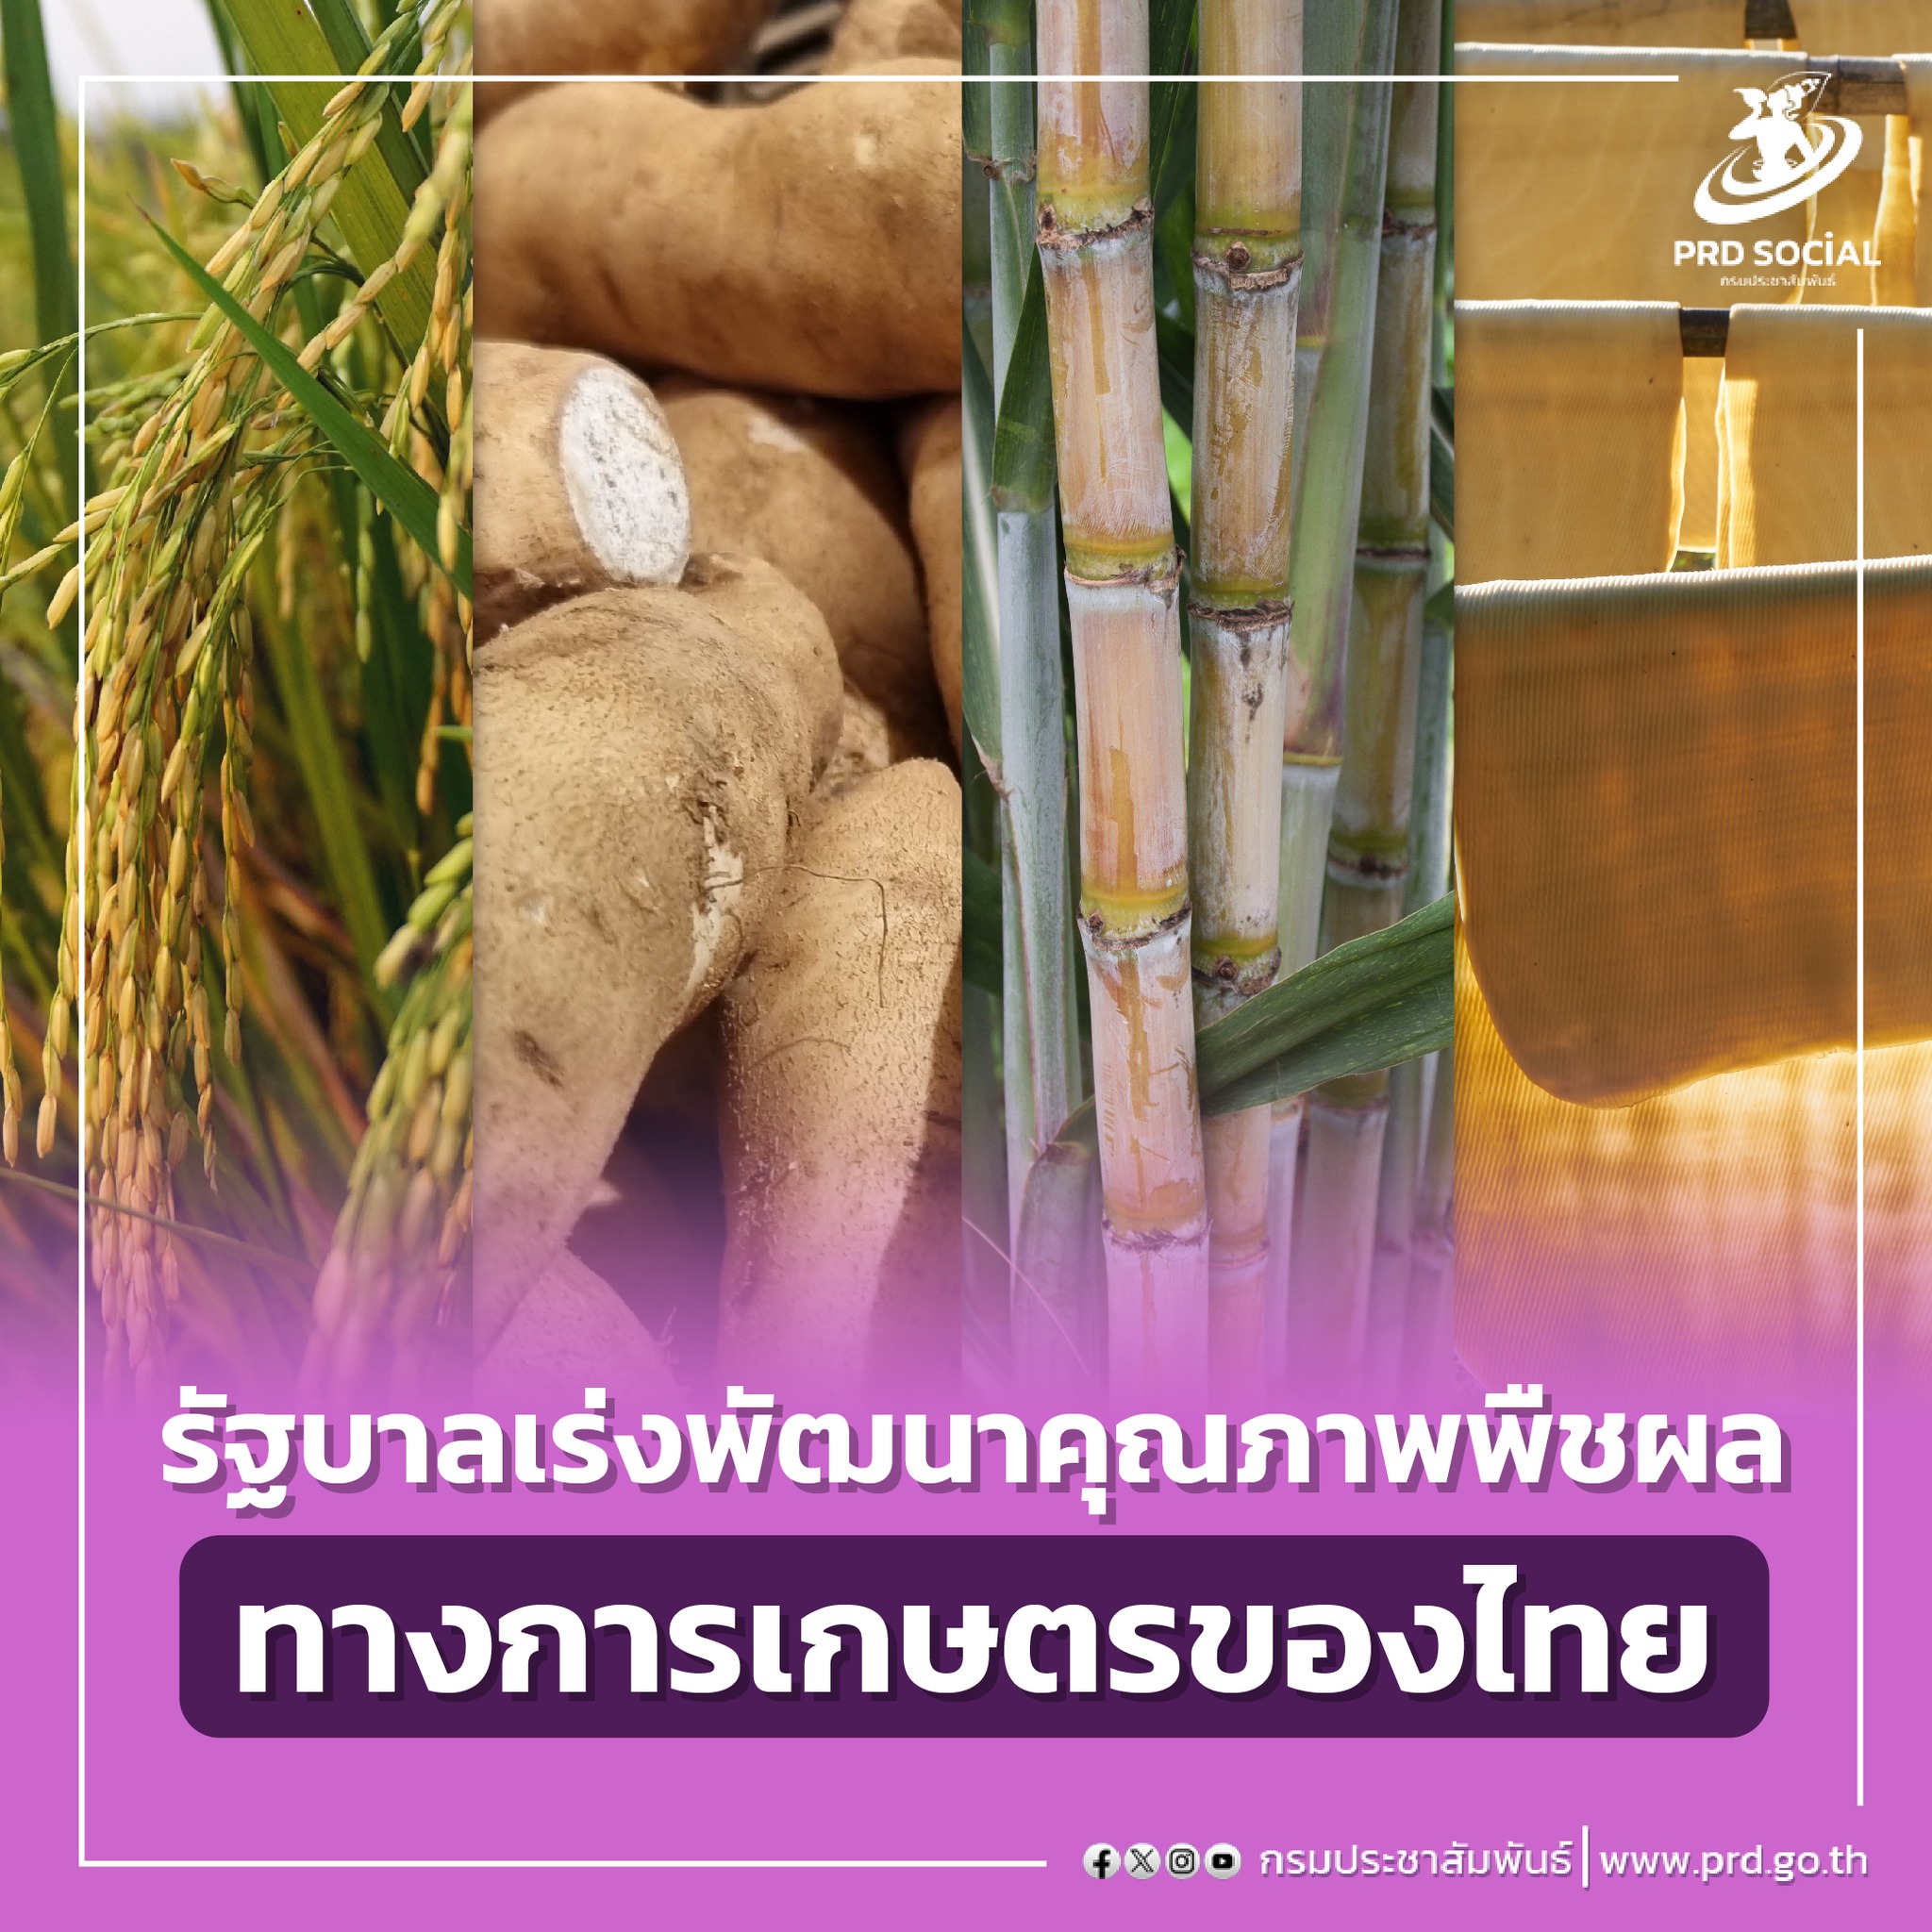 ดันไทยเป็นศูนย์กลางการเกษตรและอาหารของโลก (Agriculture and Food Hub)